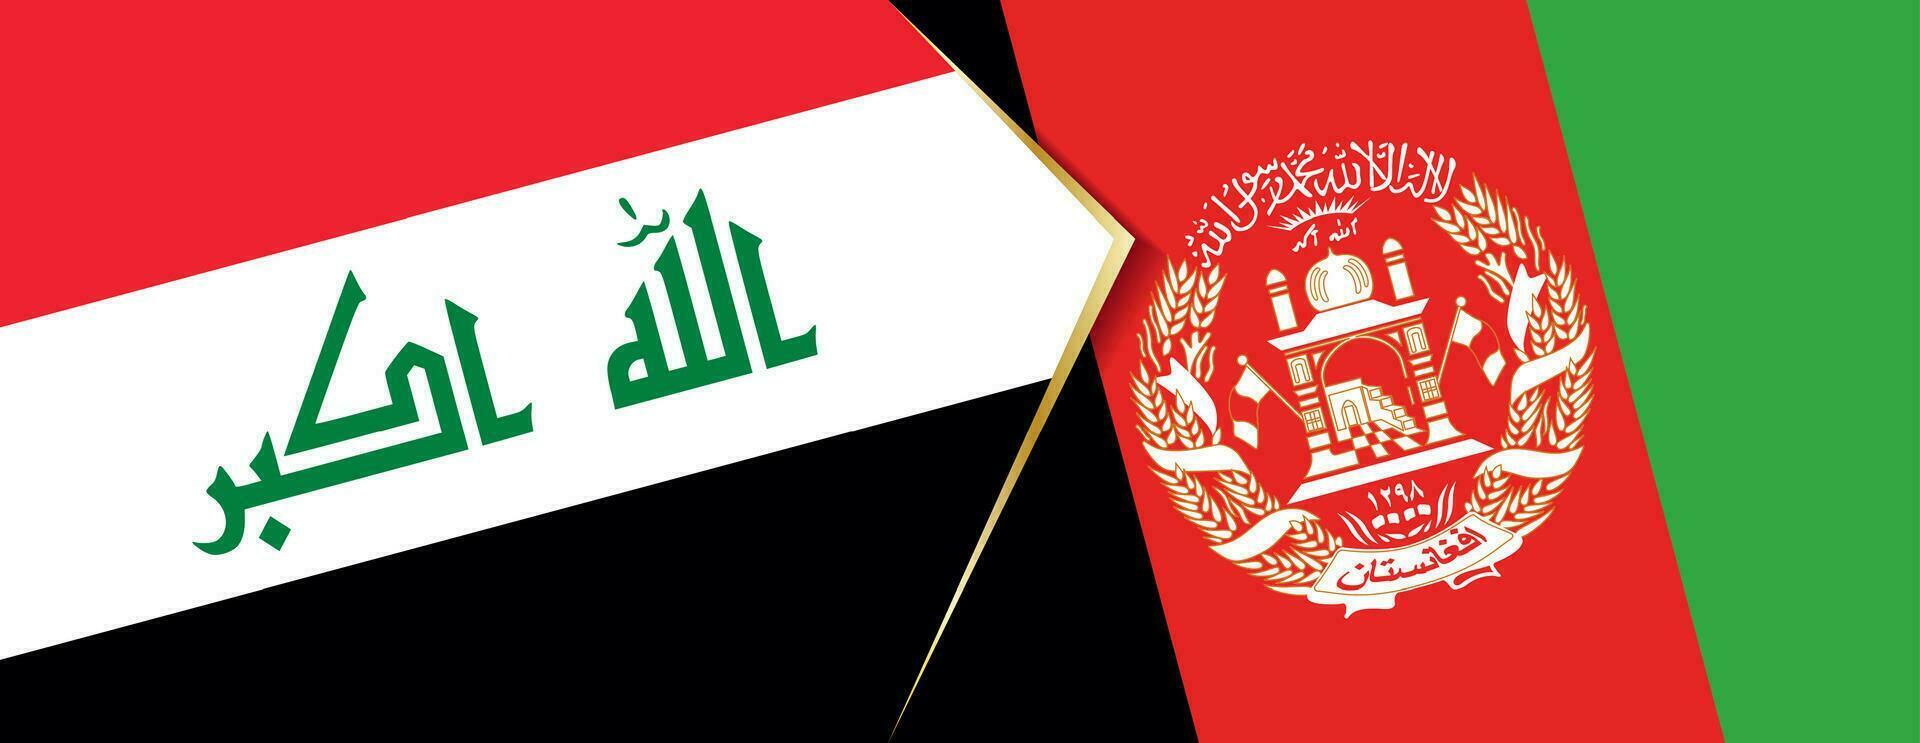 Irak en afghanistan vlaggen, twee vector vlaggen.